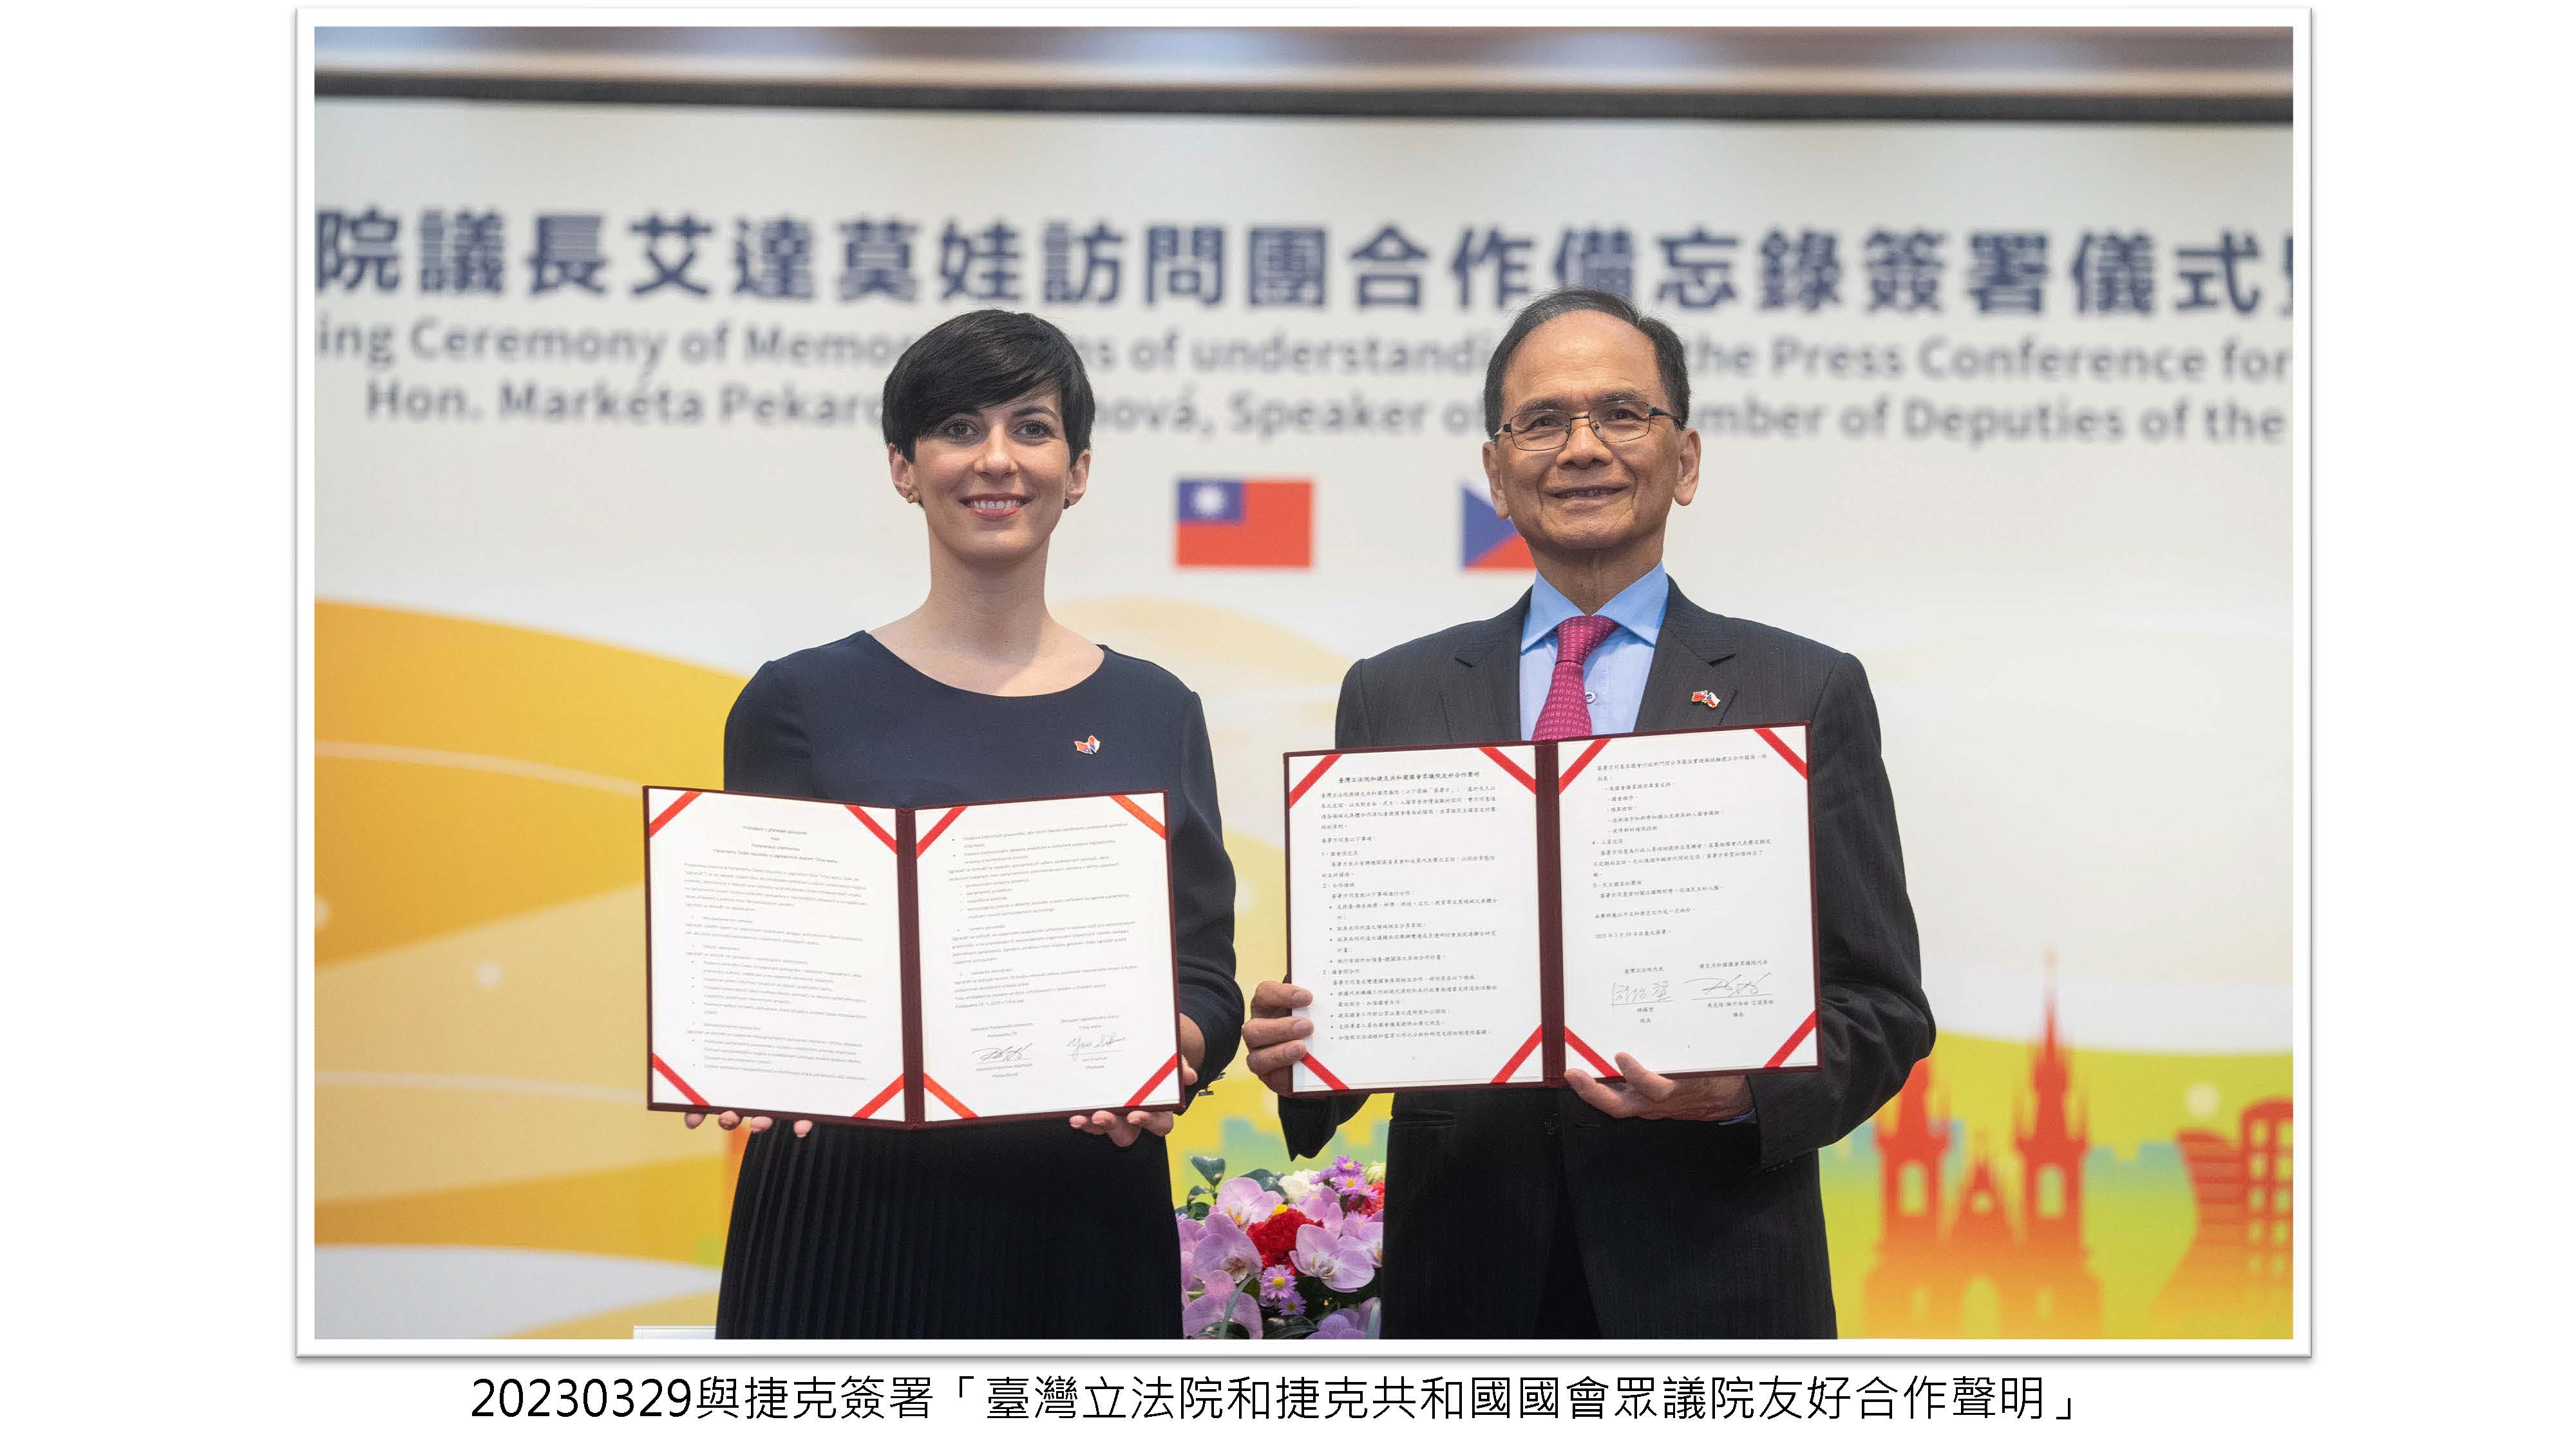 與捷克簽署「臺灣立法院和捷克共和國國會眾議院友好合作聲明」封面照